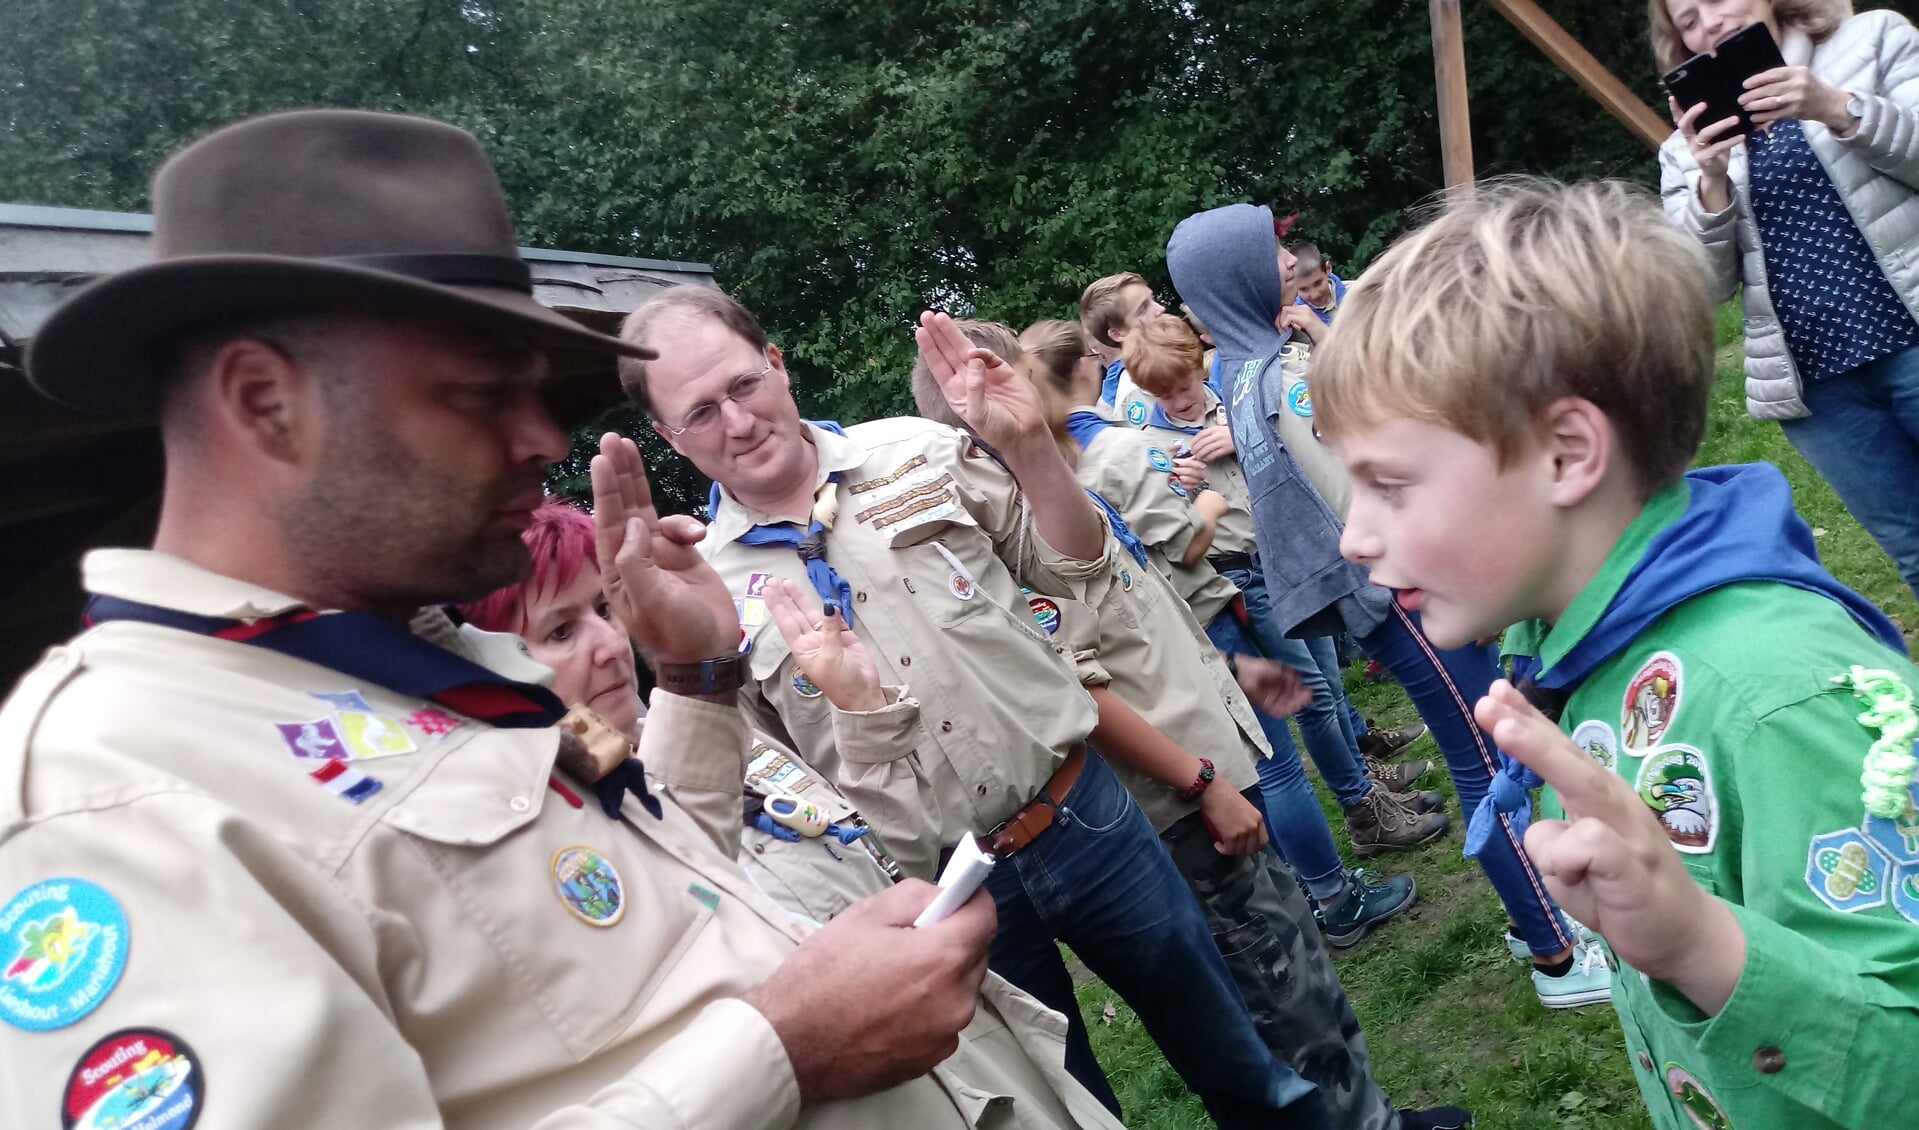 Thomas Janssen legt de scouts eed af behorend bij de installatie aan de leiders Anita, Bas en Eric. Hierna ontvangt hij de beige blouse van de scouts